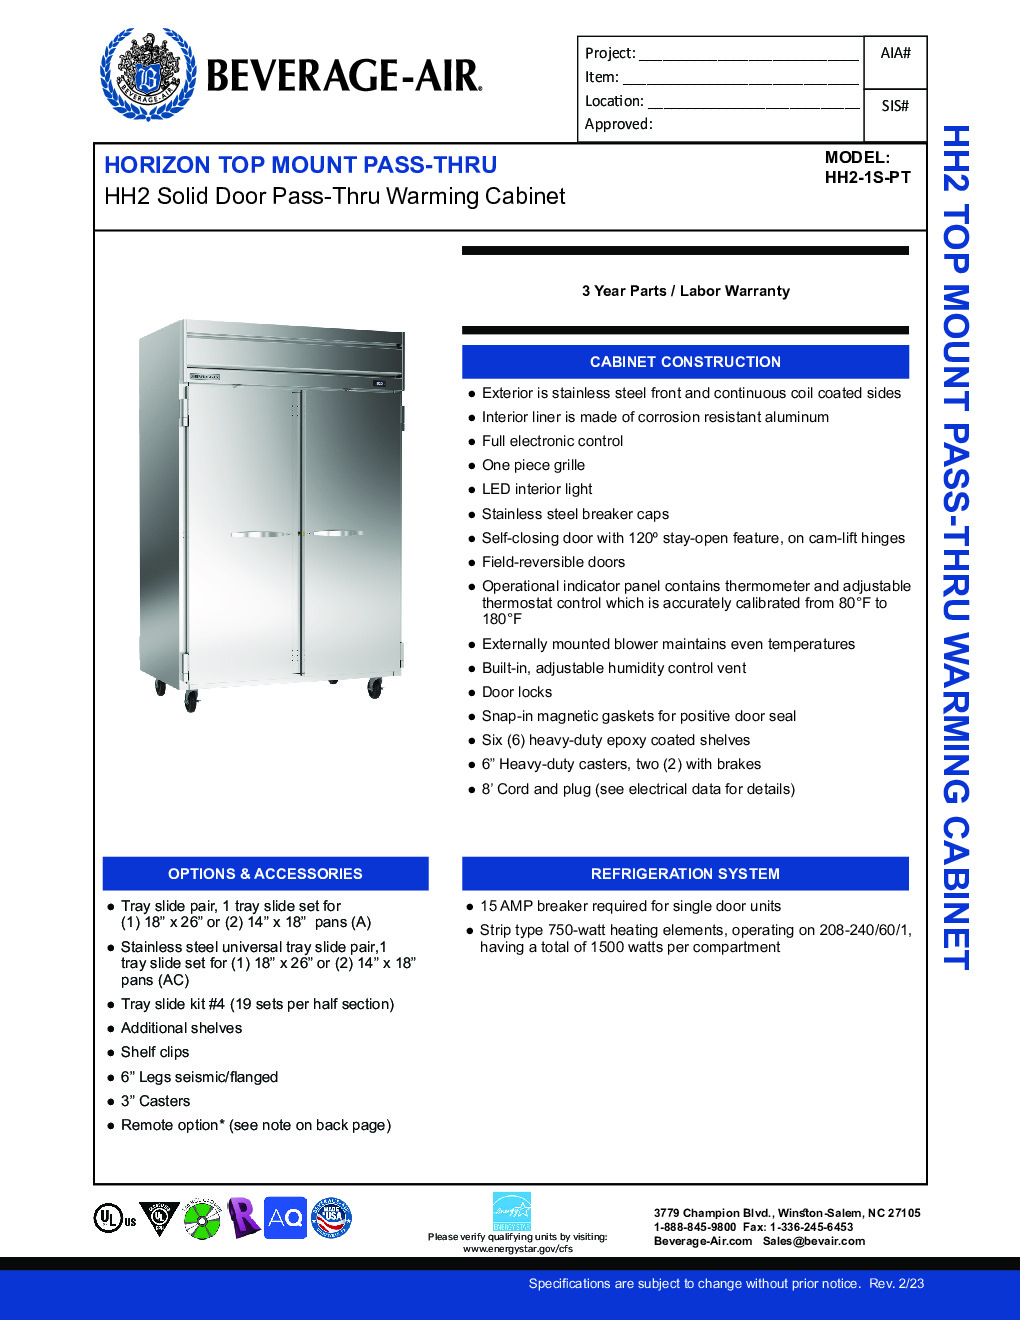 Beverage Air HH2-1S-PT Pass-Thru Heated Cabinet